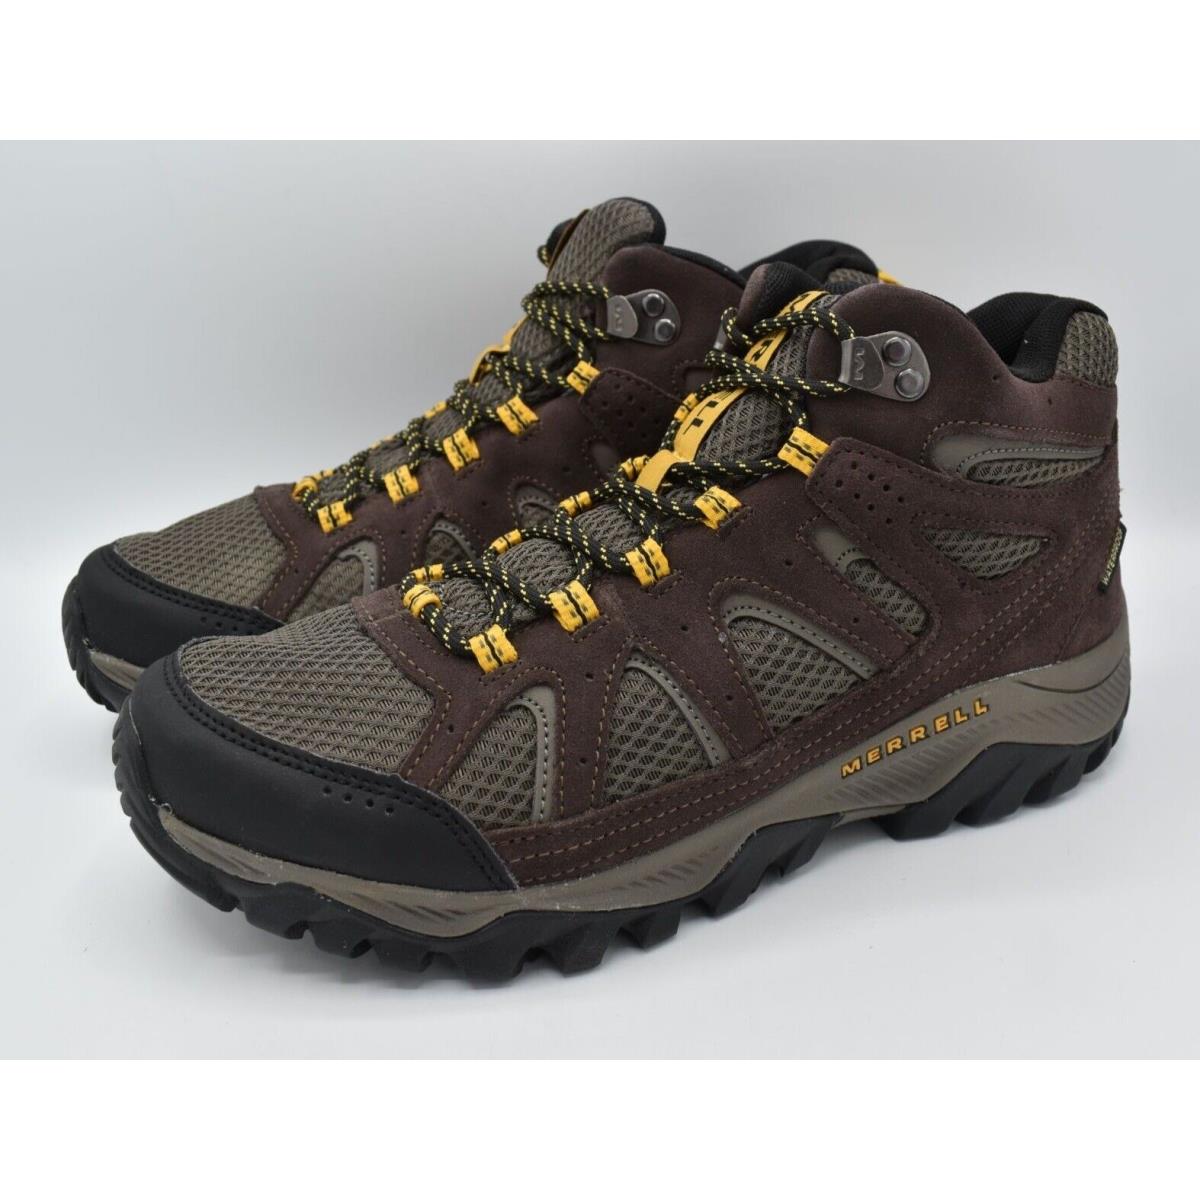 Merrell Men Size 12 Oakcreek Mid Waterproof Expresso Hiking Boots Shoes